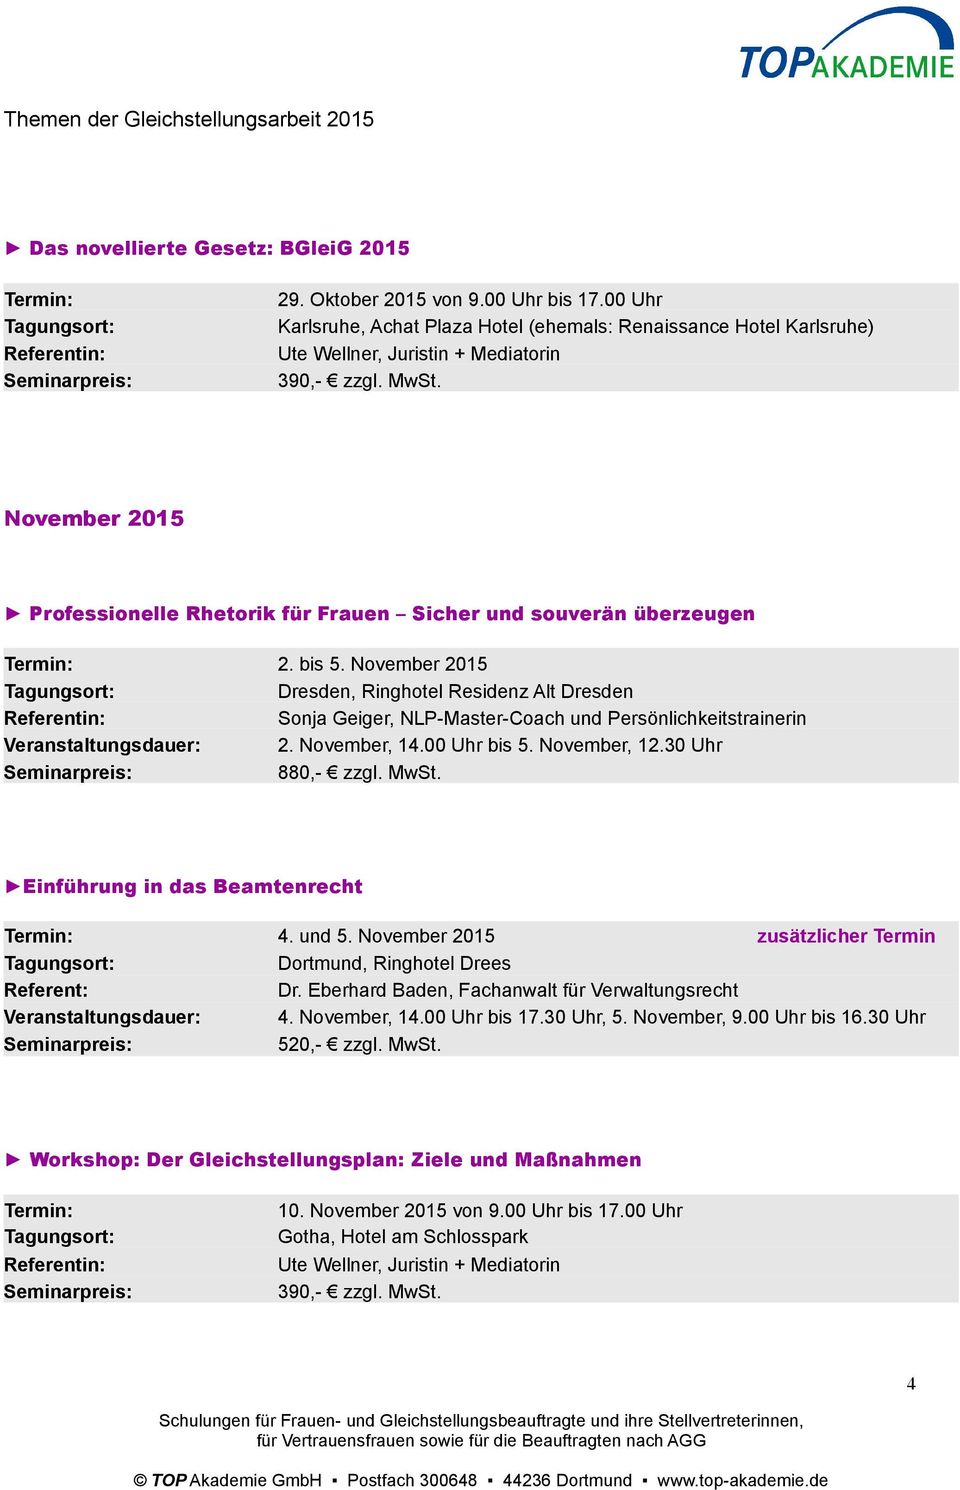 November 2015 Dresden, Ringhotel Residenz Alt Dresden Sonja Geiger, NLP-Master-Coach und Persönlichkeitstrainerin Veranstaltungsdauer: 2. November, 14.00 Uhr bis 5. November, 12.30 Uhr 880,- zzgl.